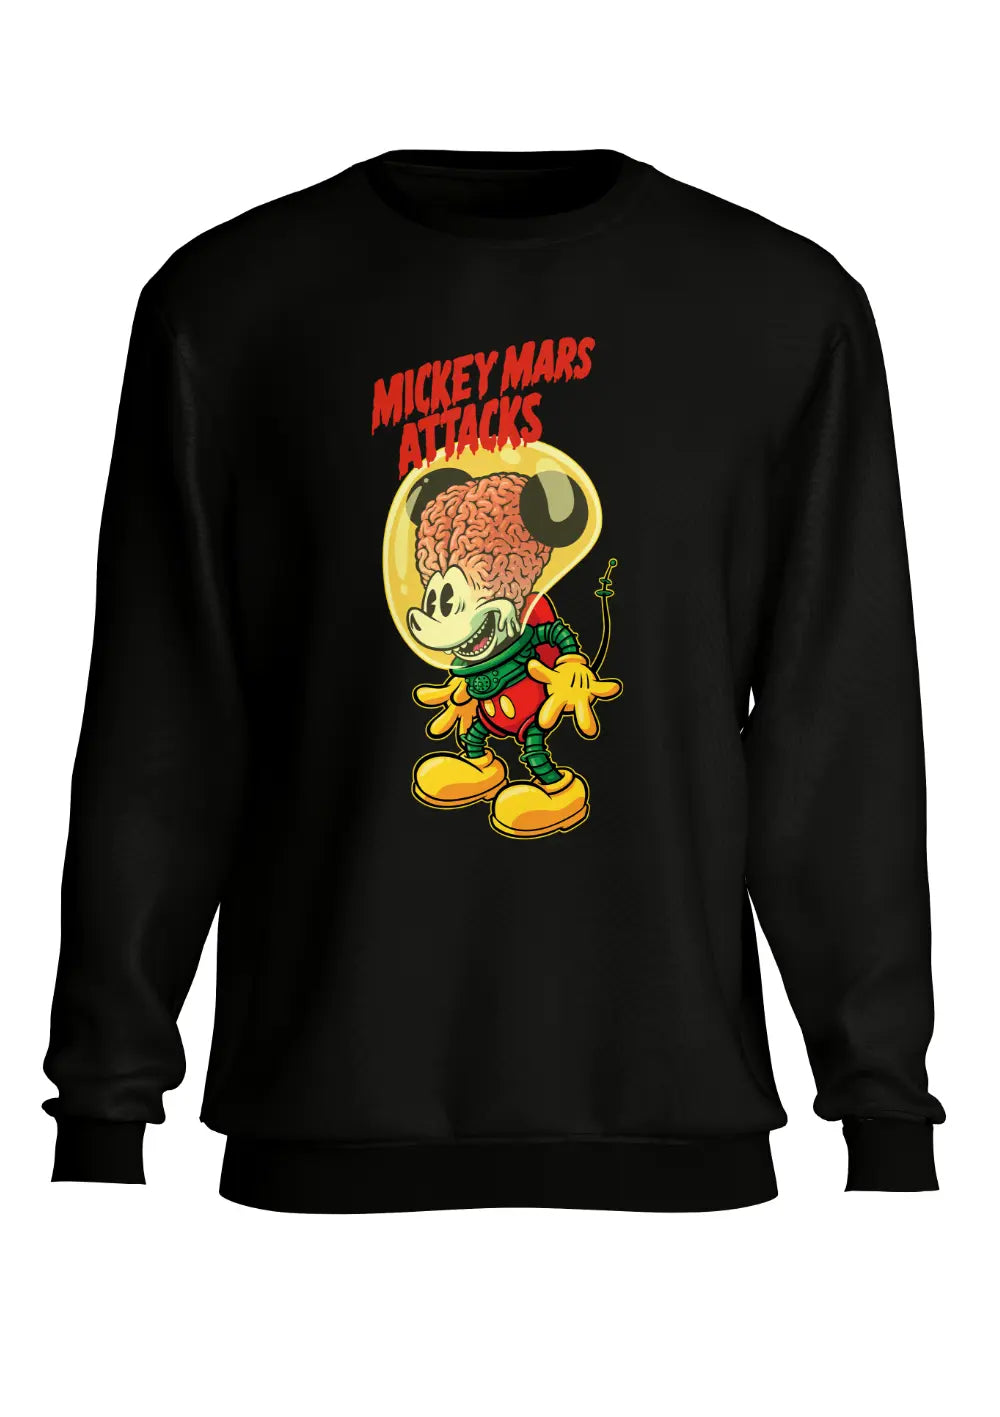 Felpa a Girocollo Mickey Mouse Mars Attack Funny, CmrDesignStore, T-Shirt, Felpa a Girocollo Mickey Mouse Mars Attack Funny, CmrDesignStore